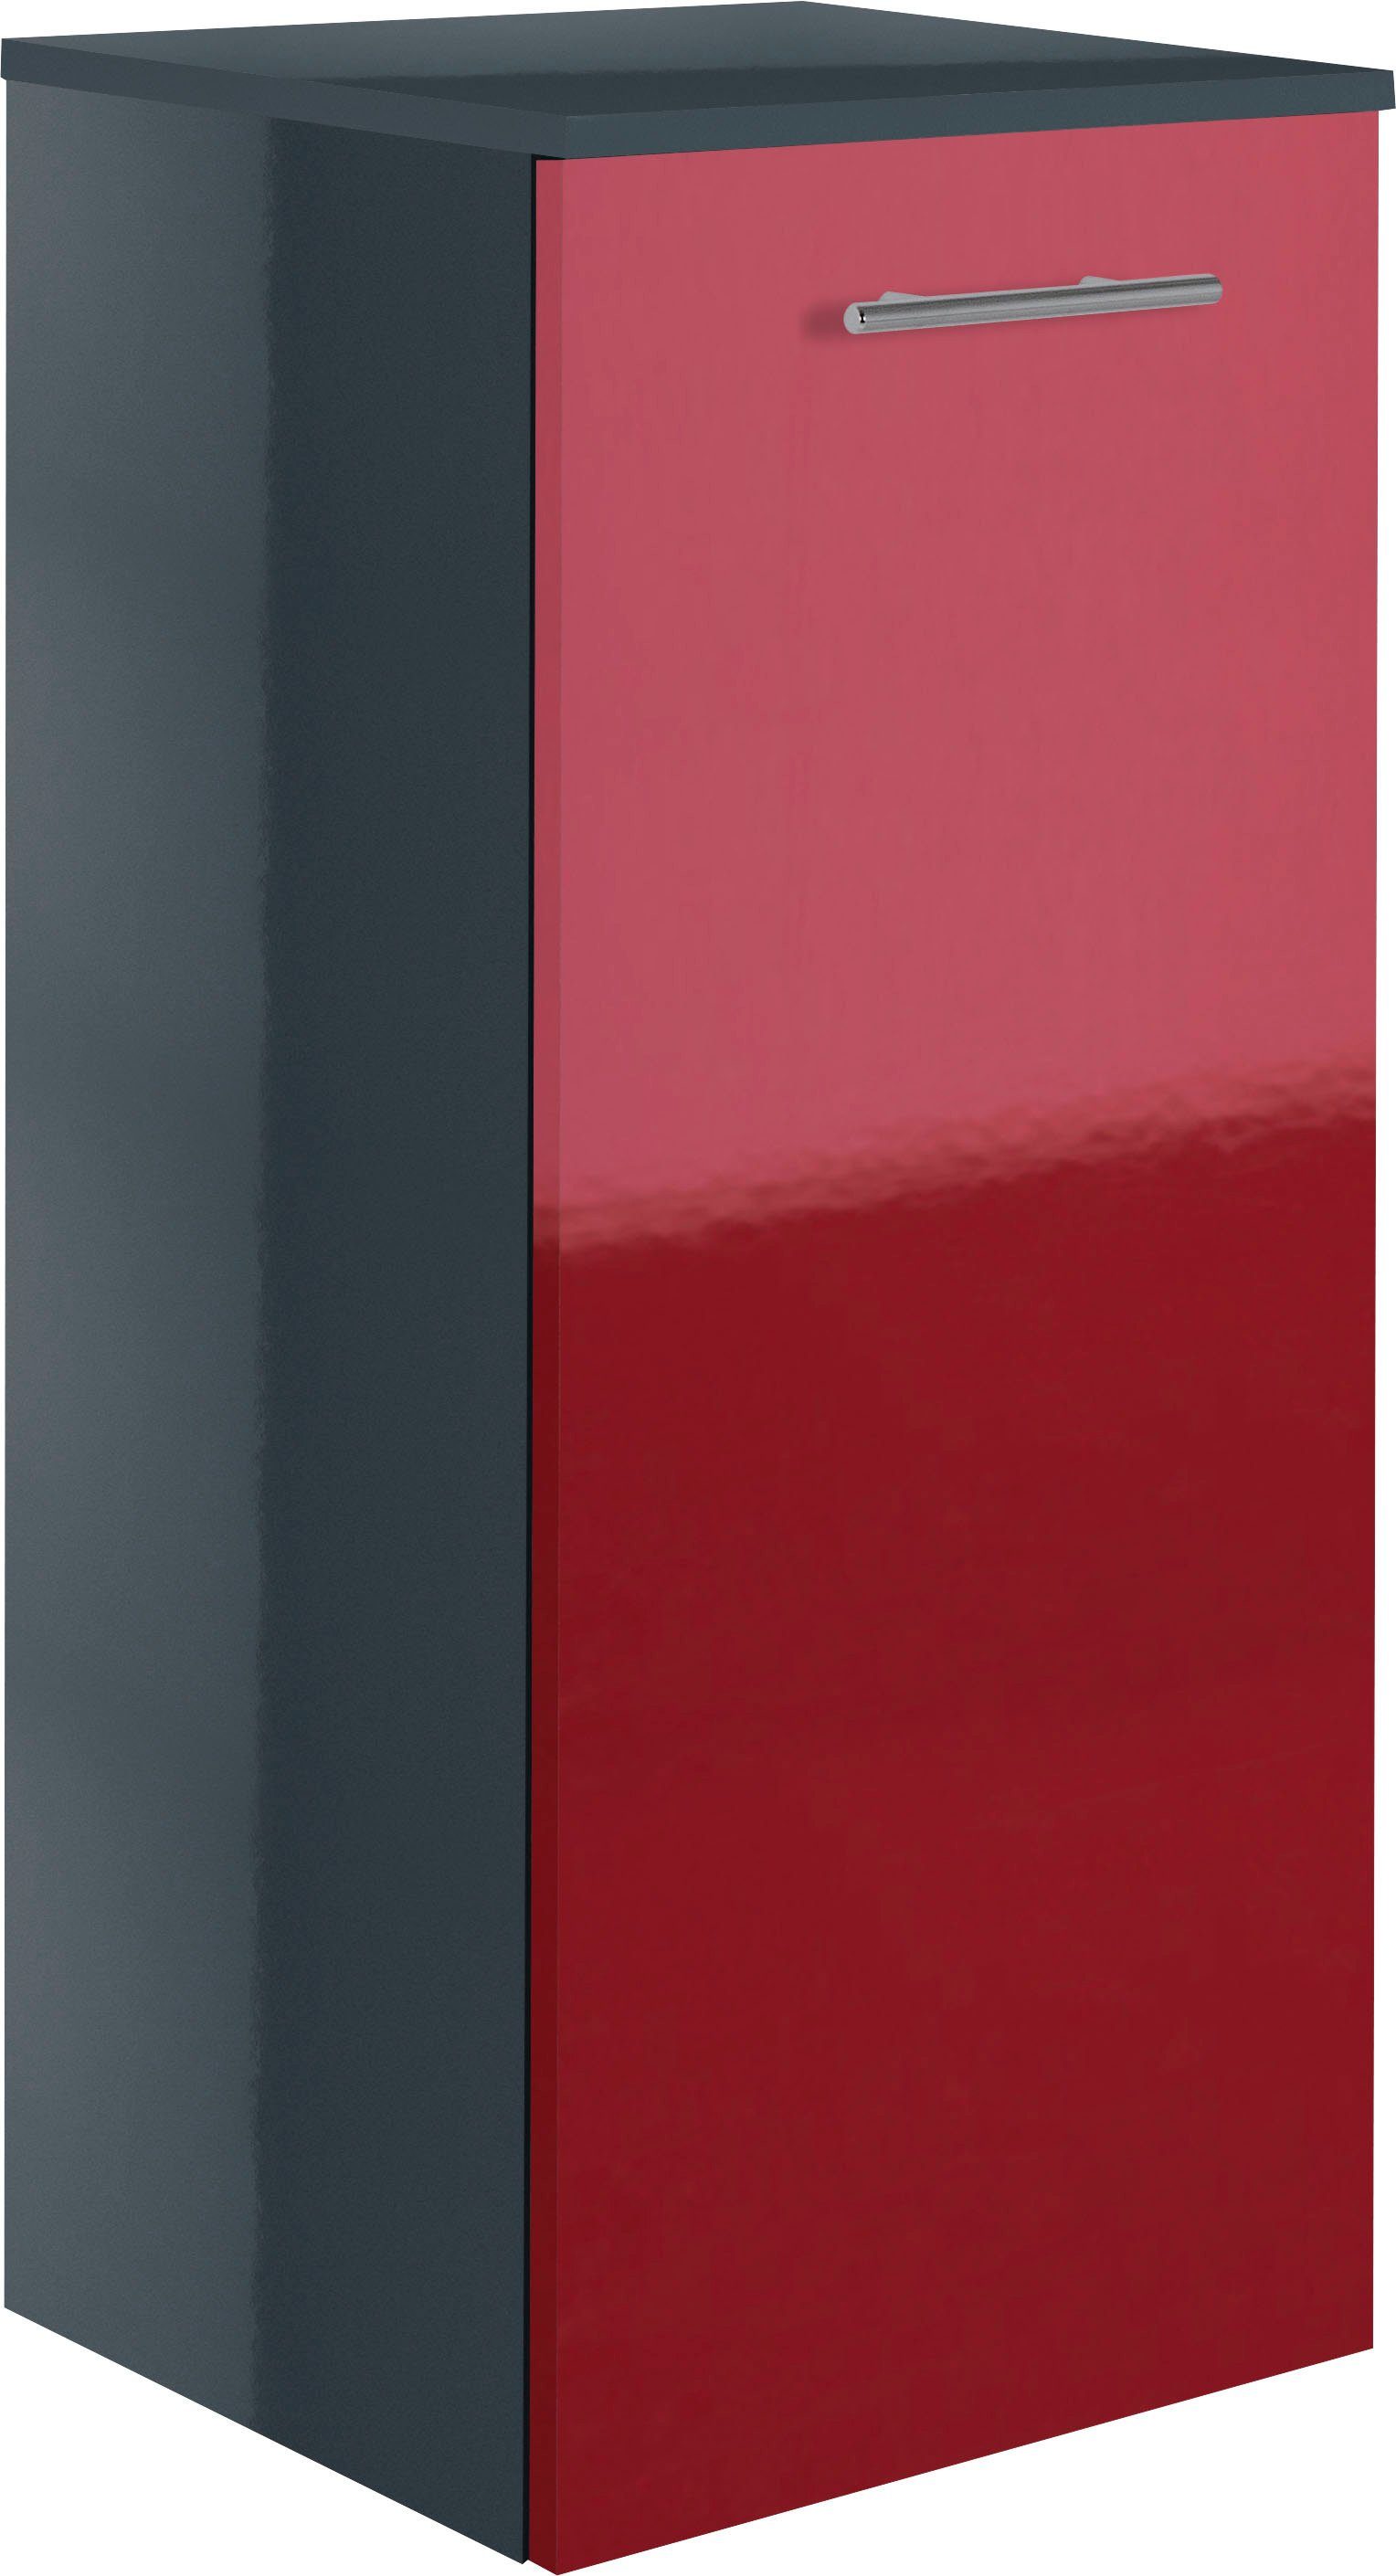 MARLIN Midischrank 3040, Breite 40 cm rot | anthrazit | Midischränke